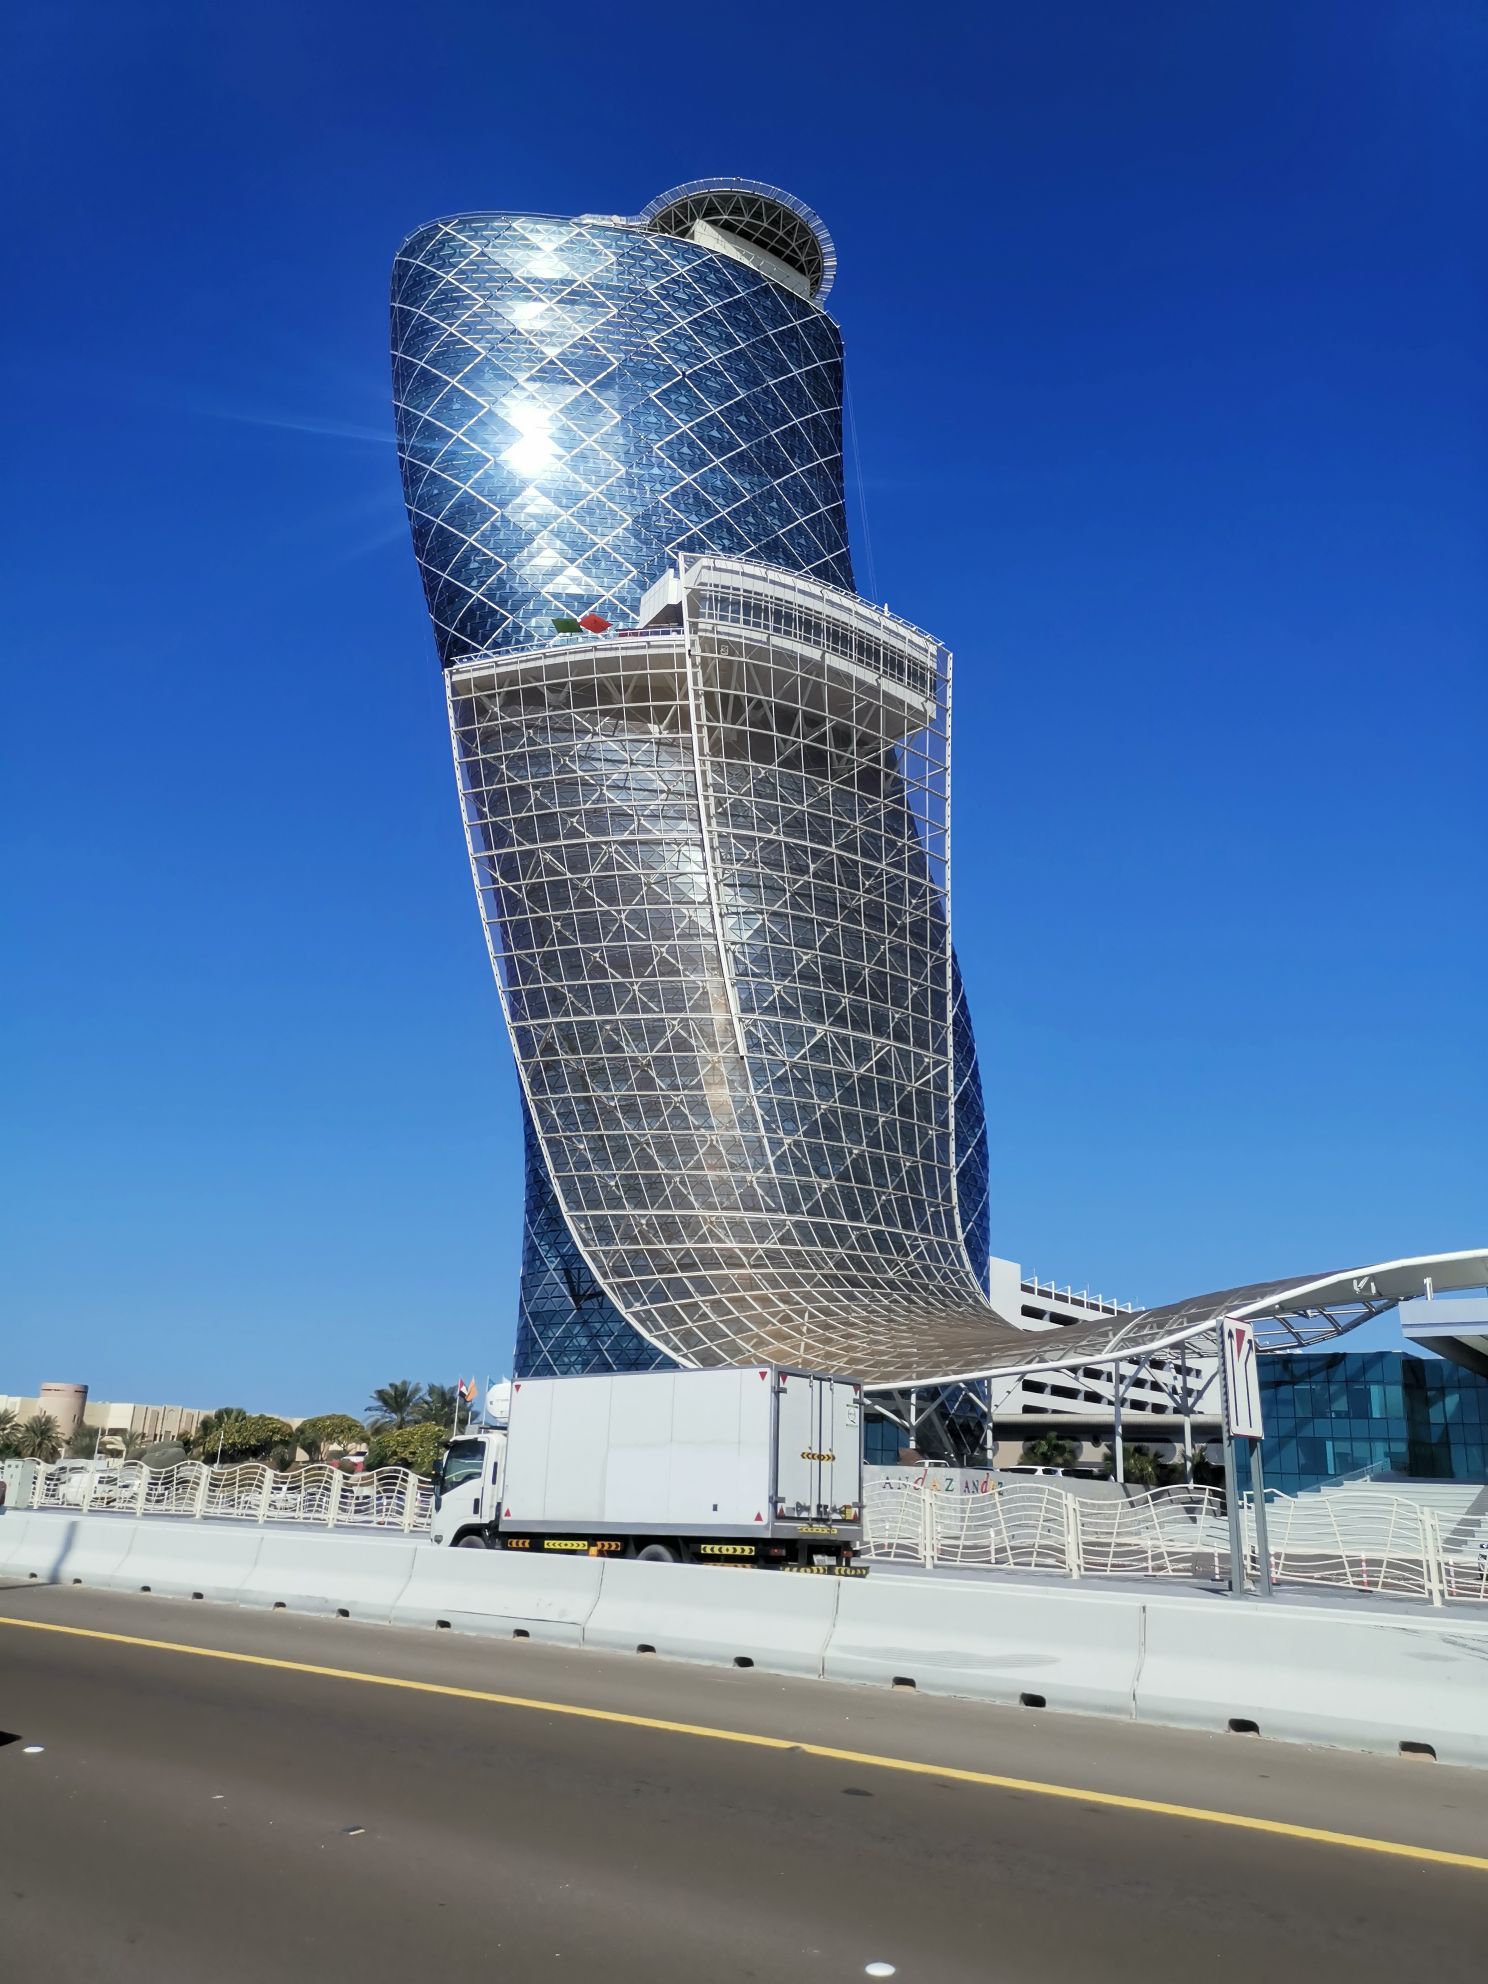 首都之门是阿拉伯联合酋长国首都阿布扎比市的一座在建高楼2010年6月6